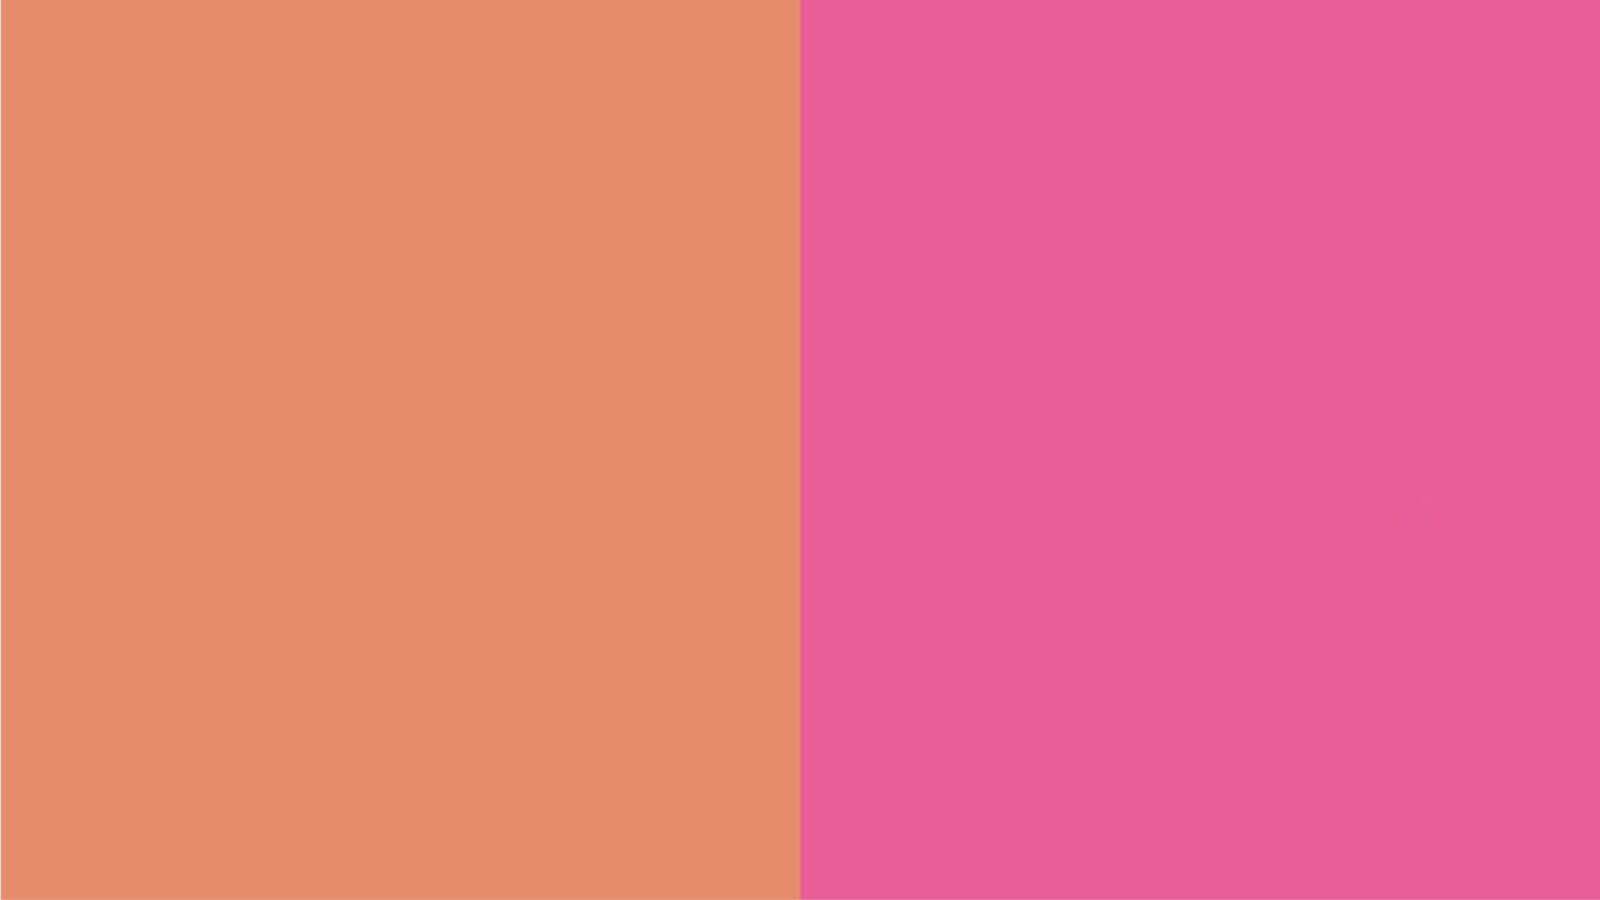 El color melocotón indica si el tono es cálido y el rosa si el tono es frío.